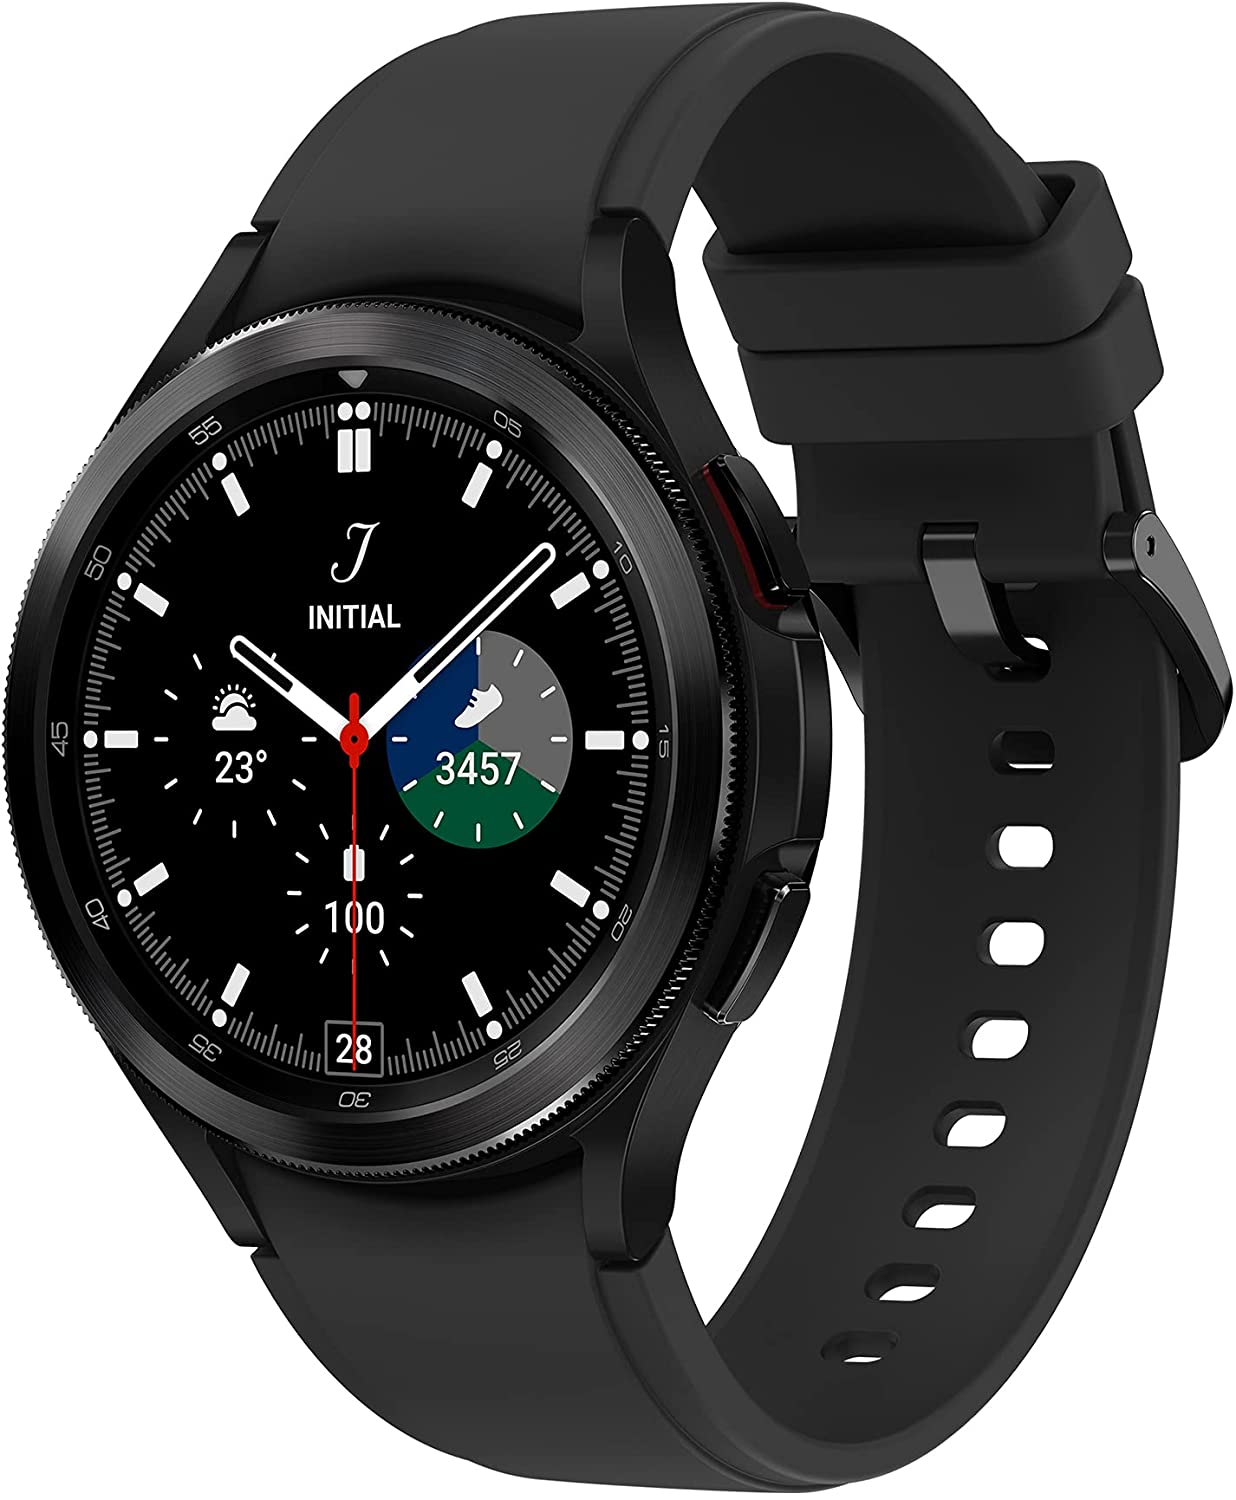 Samsung Galaxy Watch 4 vs Huawei Watch GT 3 Pro vs Apple Watch 7